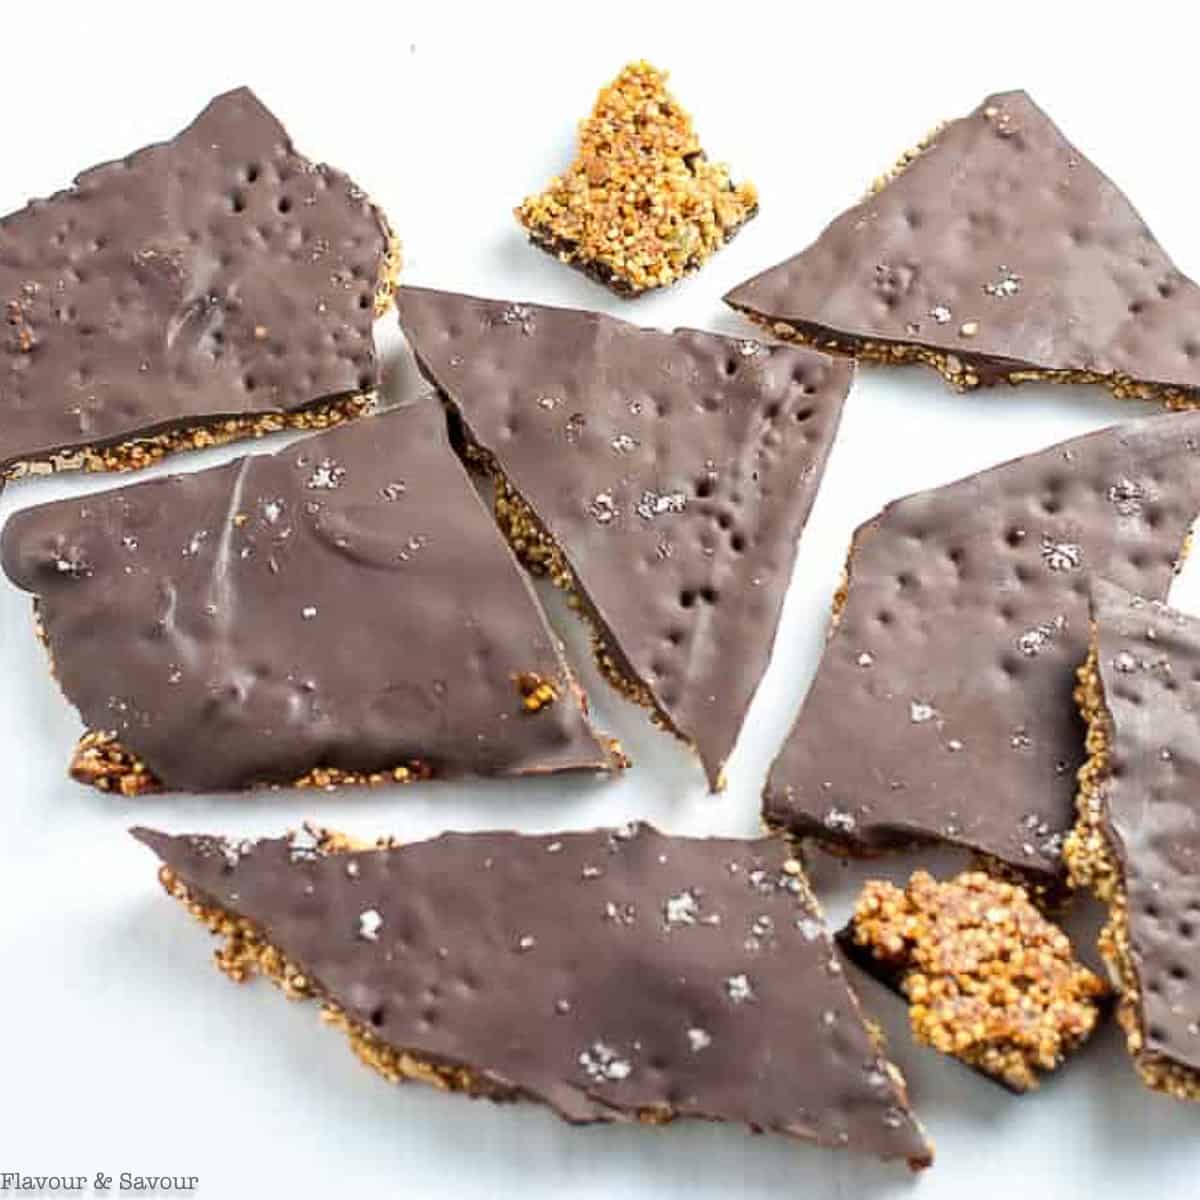 broken slabs of dark chocolate bark with quinoa